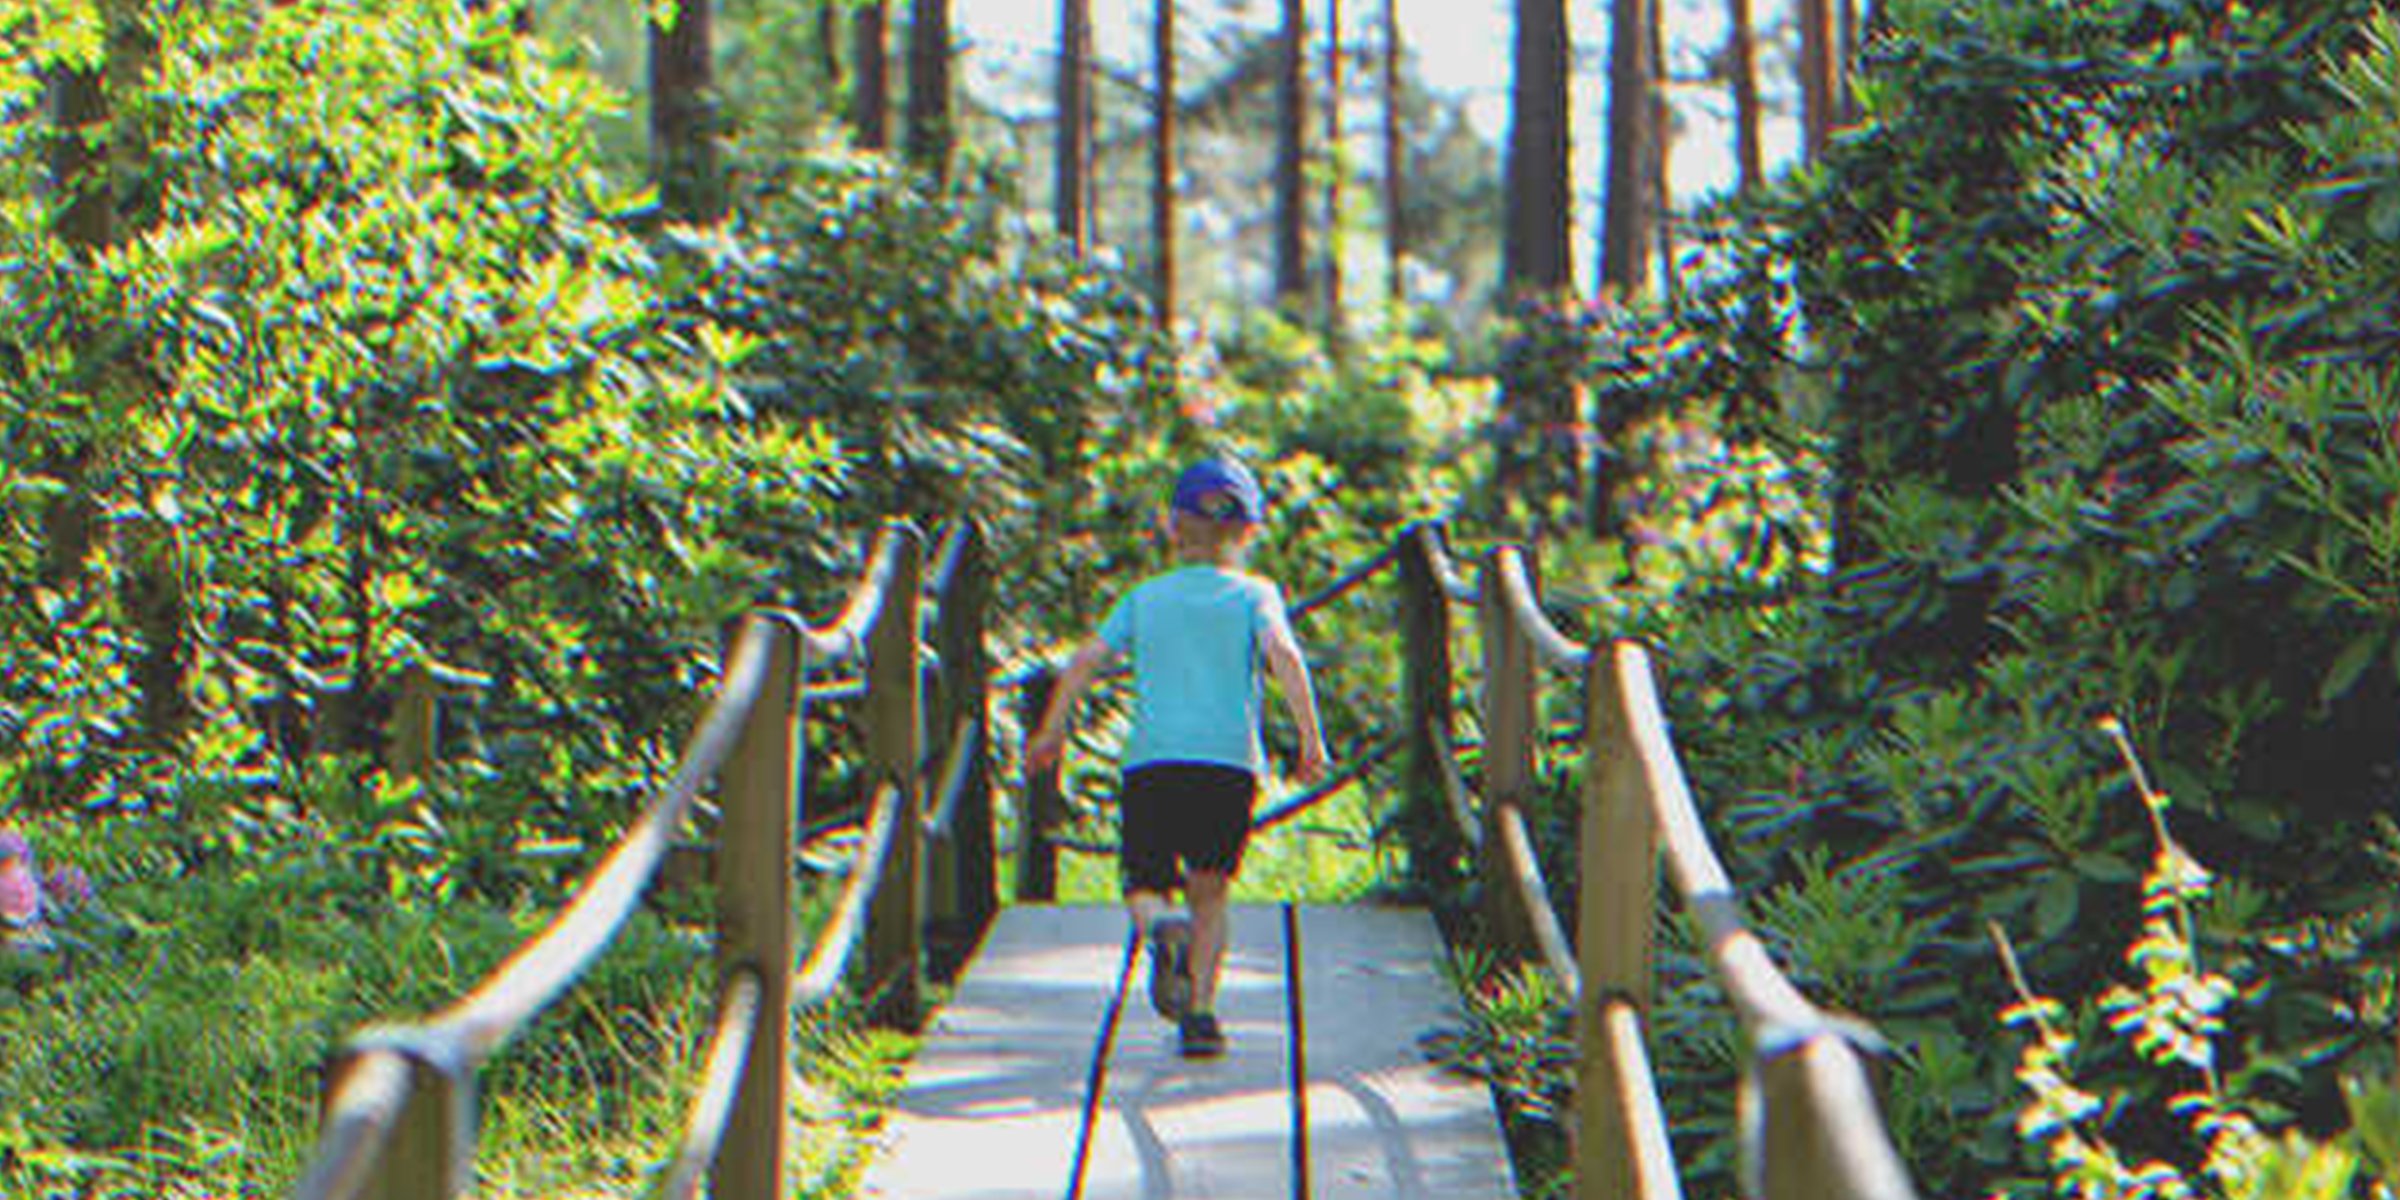 Junge auf einer Brücke im Wald | Quelle: Shutterstock